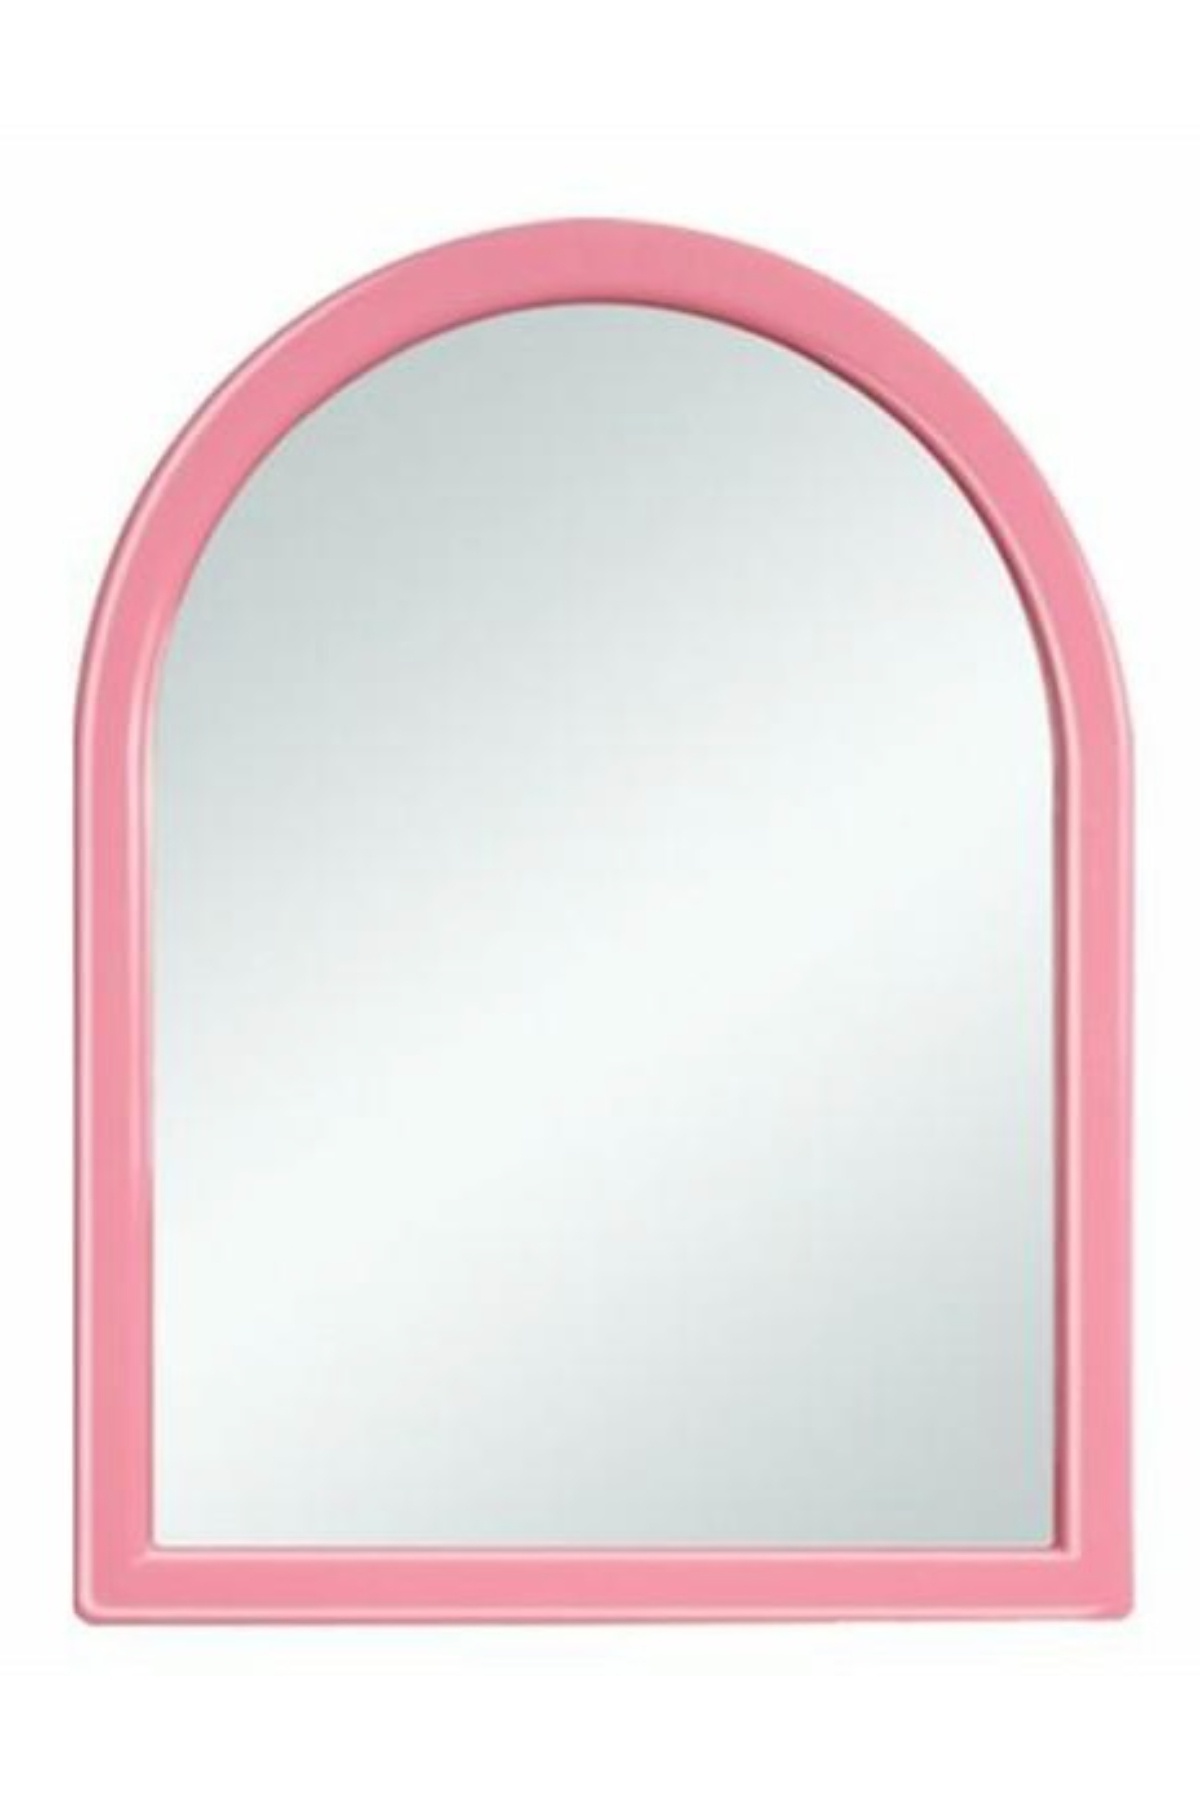 Çelik Ayna-671 Pembe Mini Tek Ayna*10 - 17-0064 - 2345